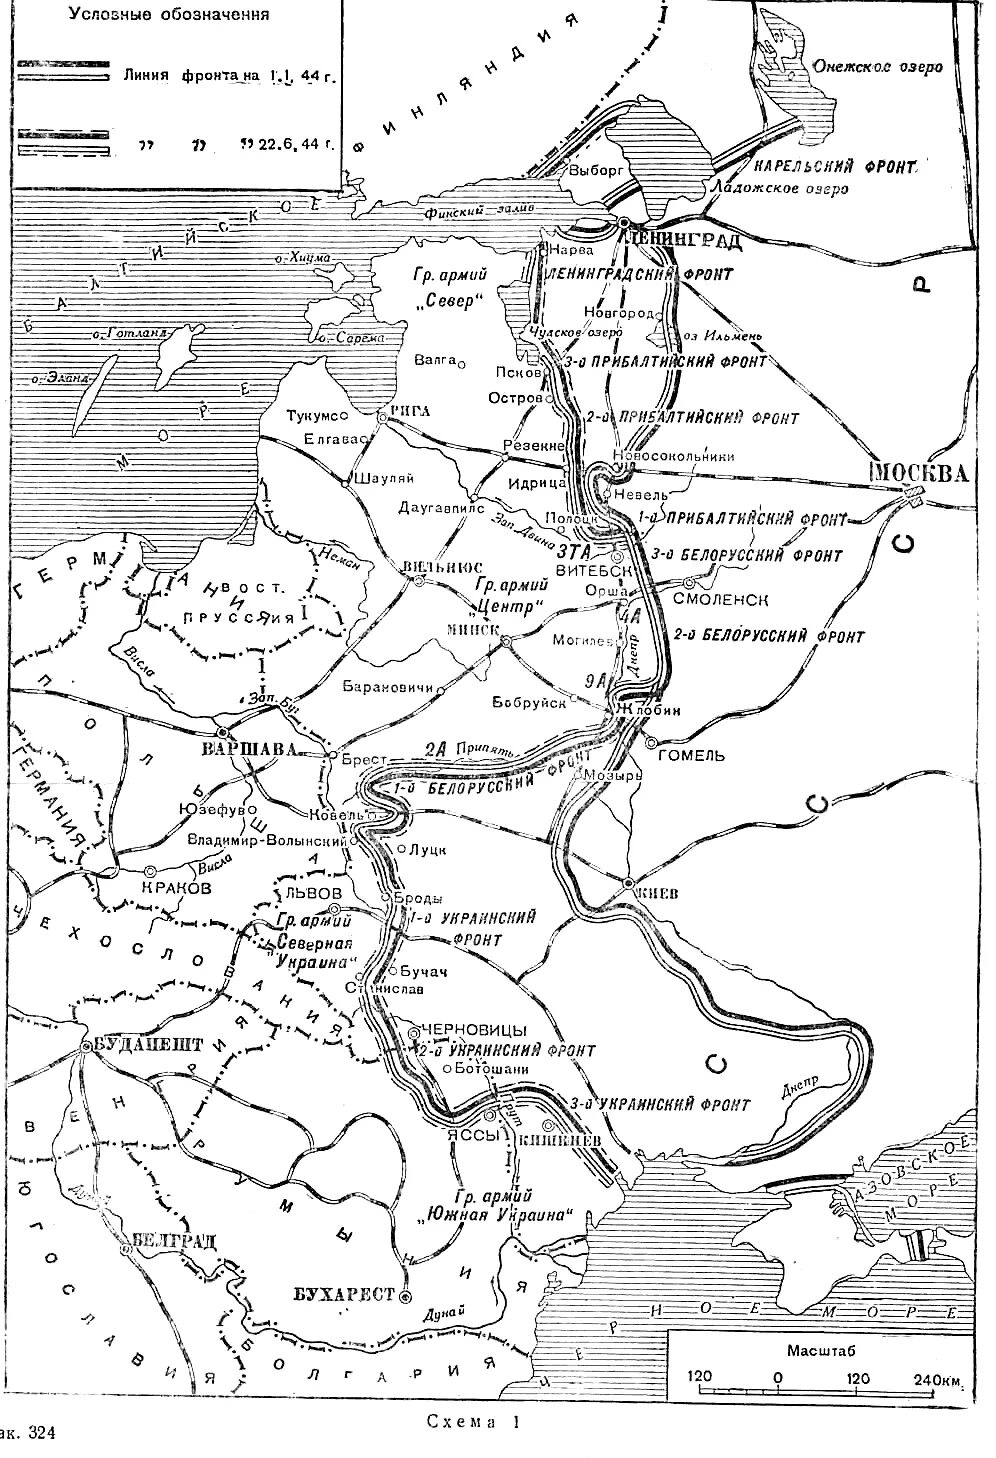 Десять сталинских ударов направления ударов. Карта 10 сталинских ударов 1944. 10 Сталинских ударов 1944 год карта.